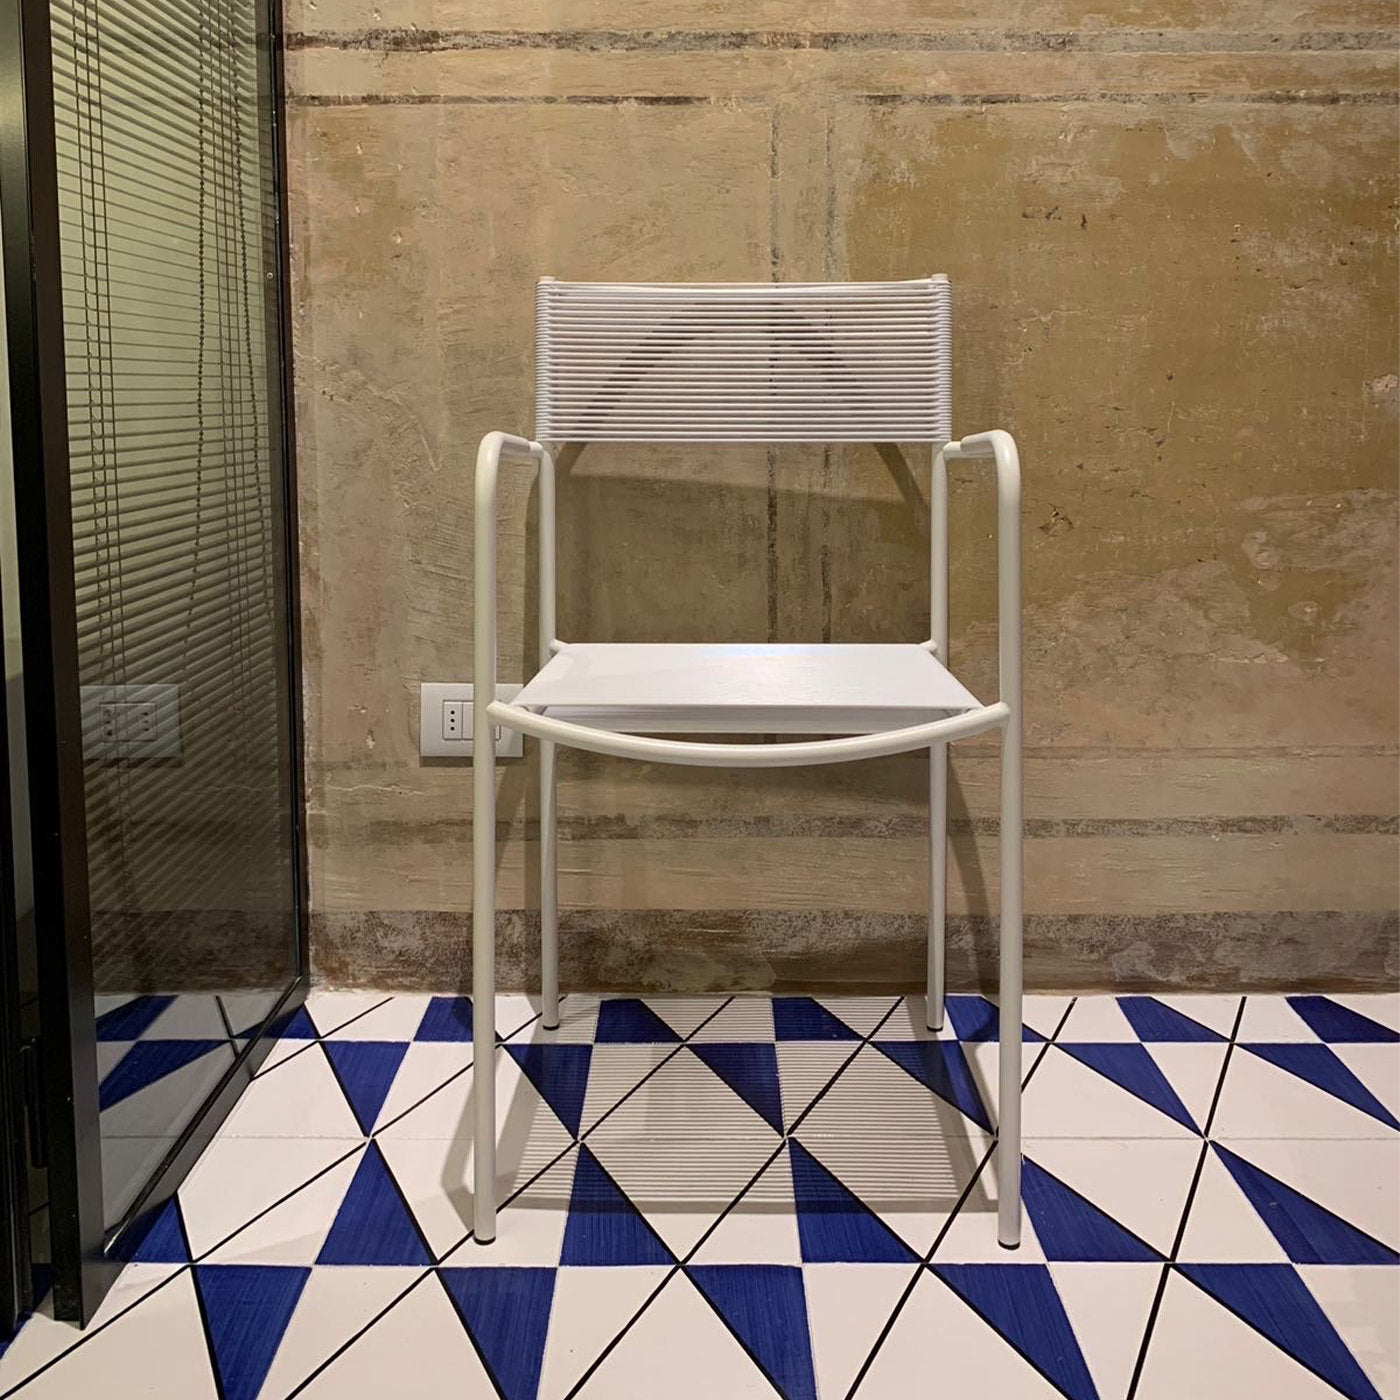 Set of 25 Posillipo Blu Majolica Tiles by Giuliano Andrea Dell'Uva - Alternative view 1